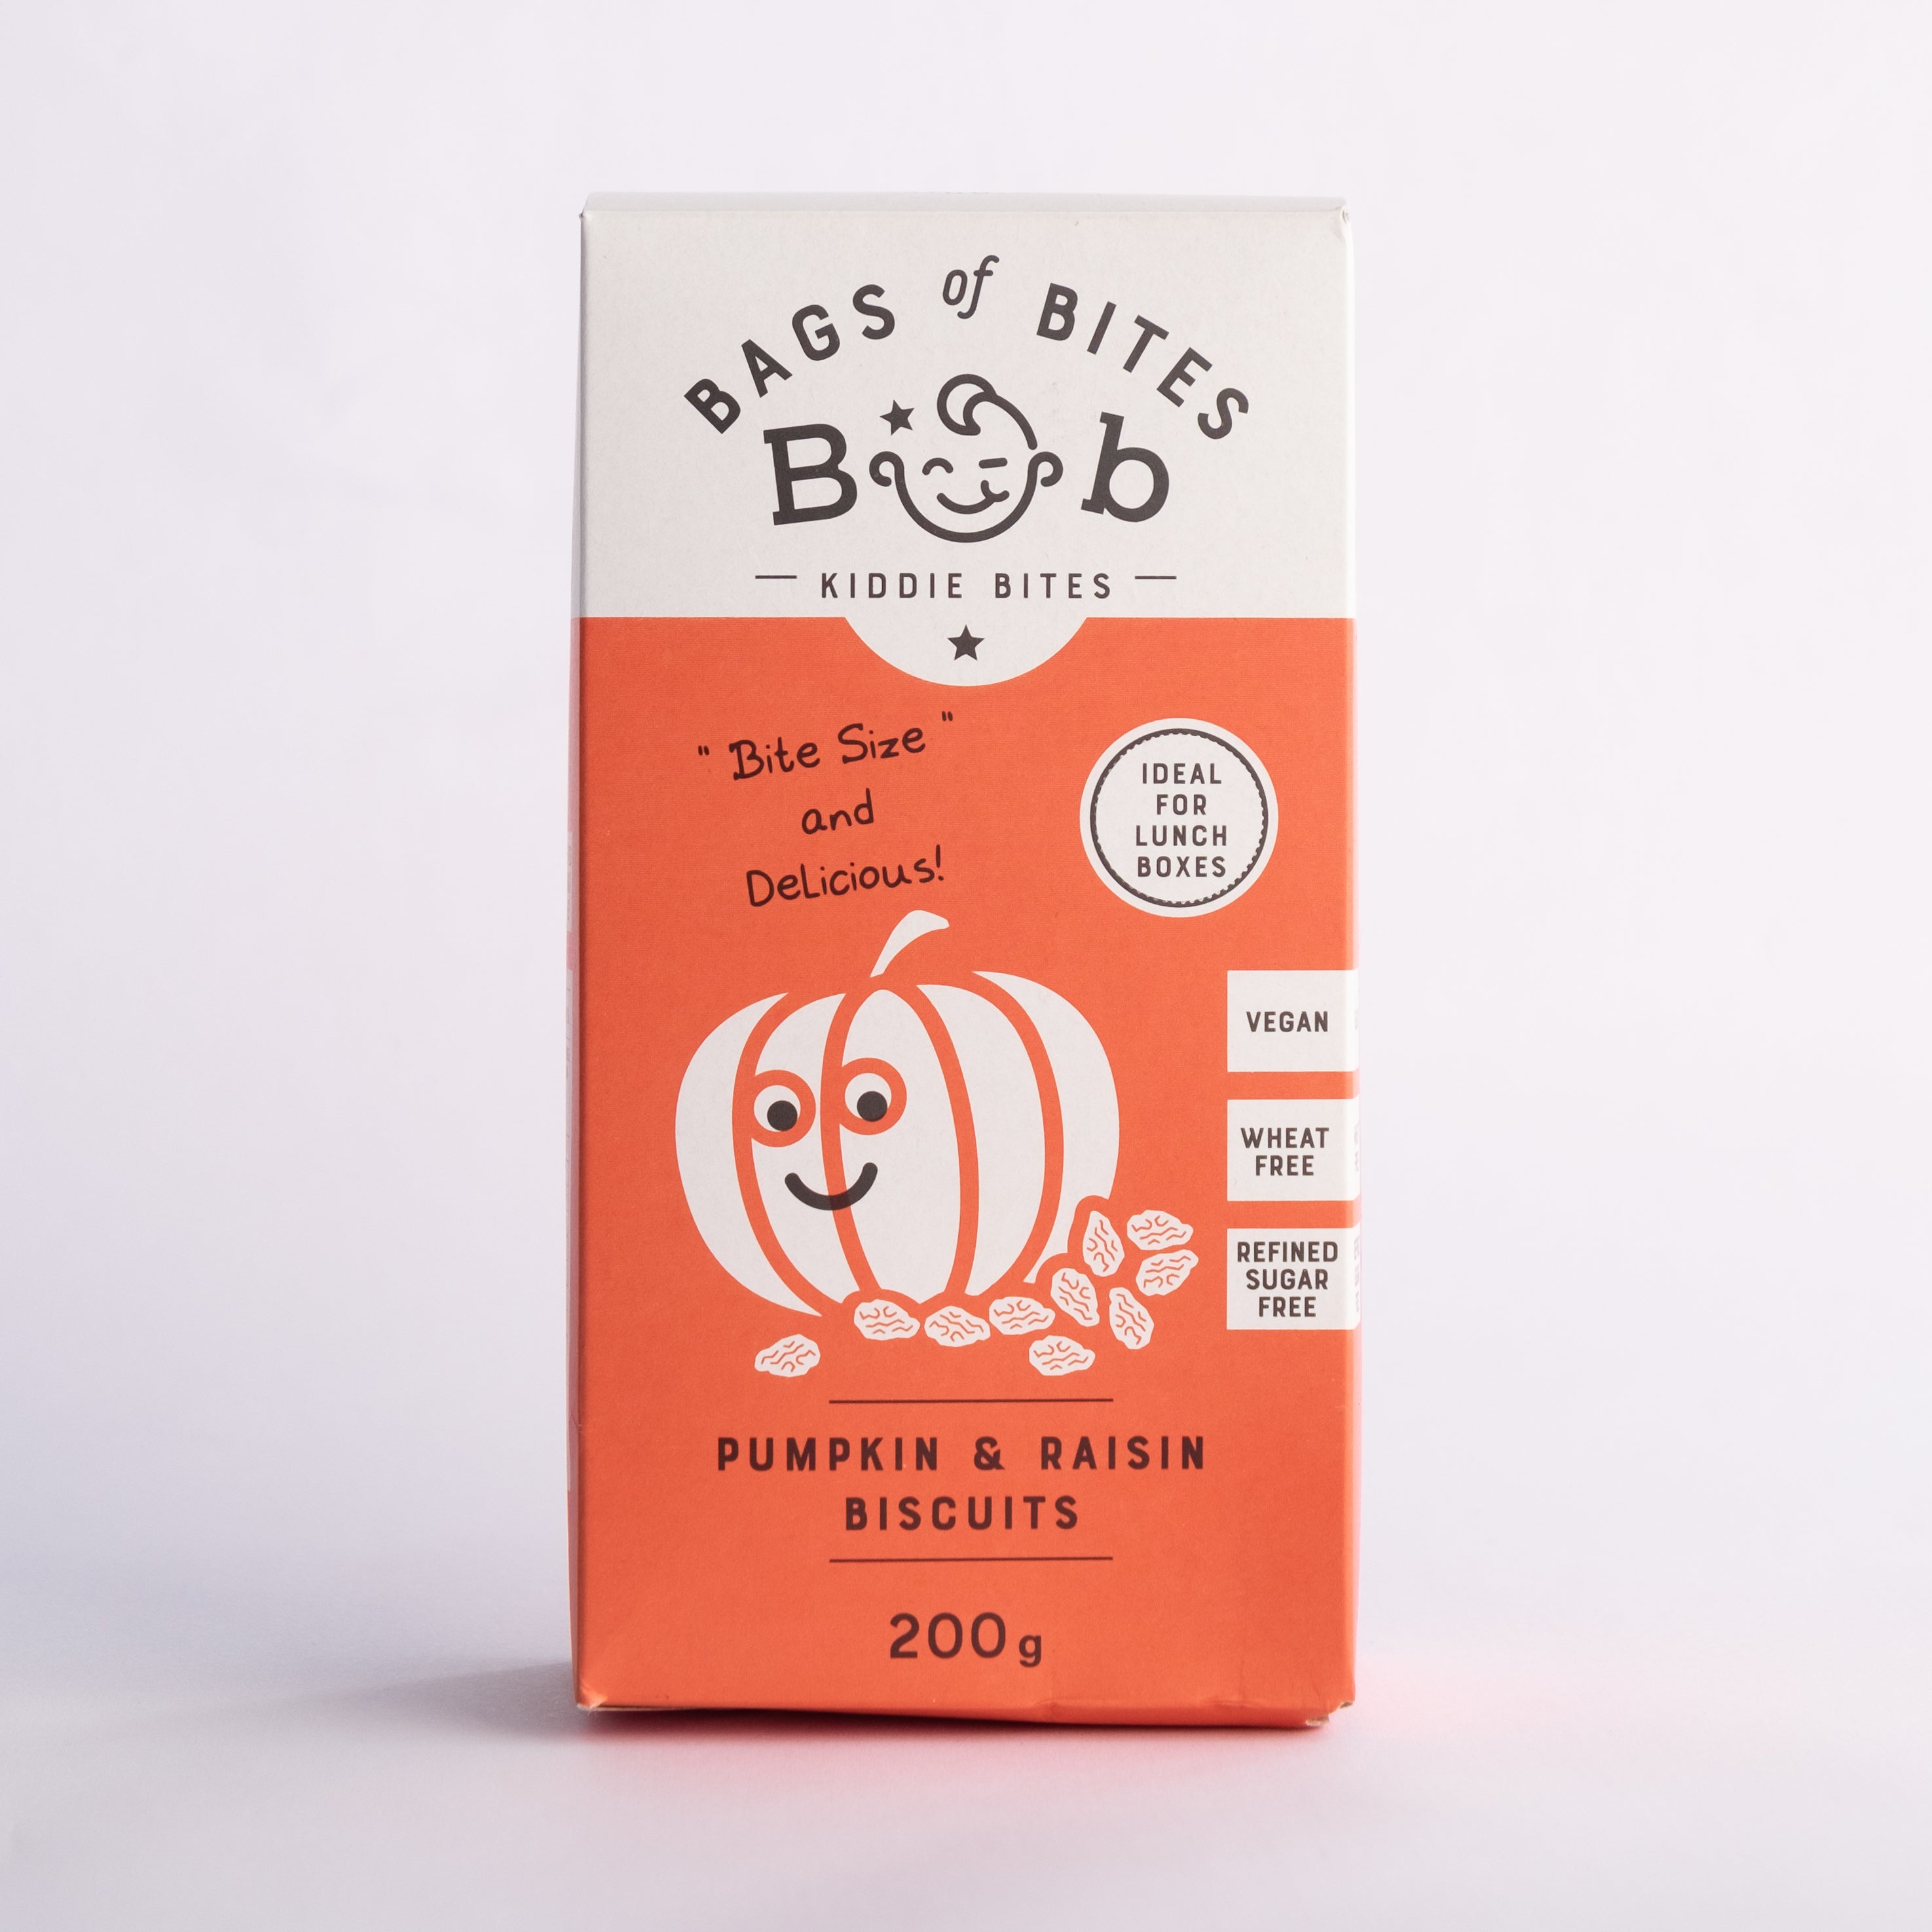 Bob Kiddies Bites - Pumpkin & Raisin Biscuits